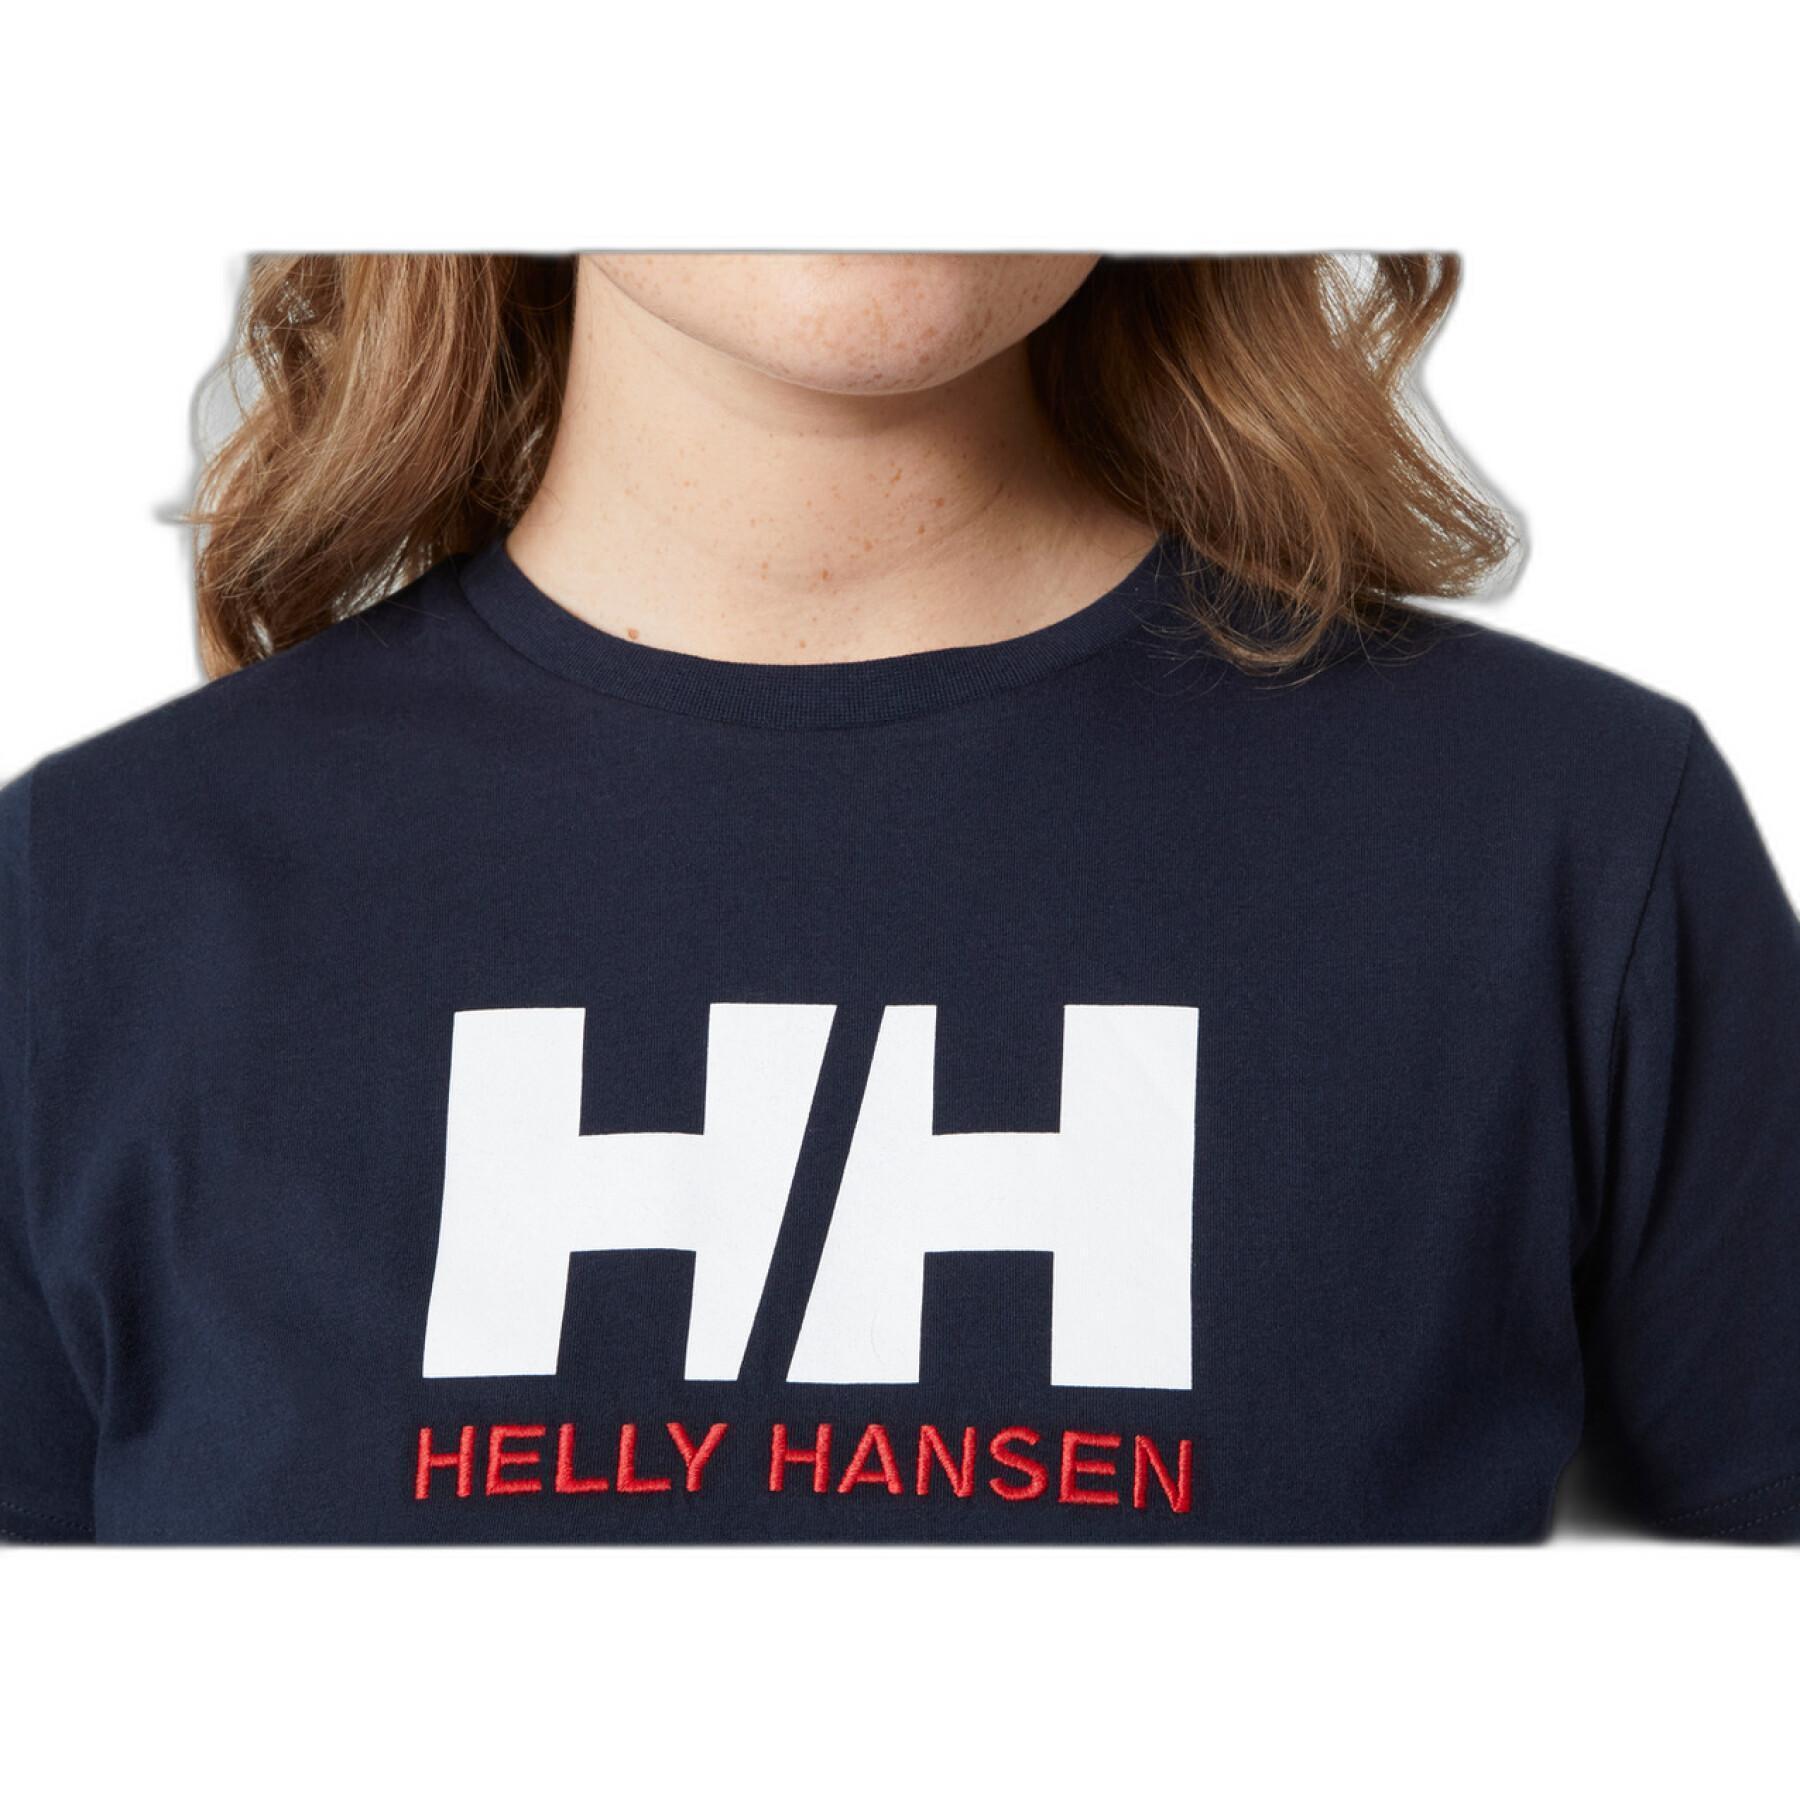 T-Shirt Frau Helly Hansen logo